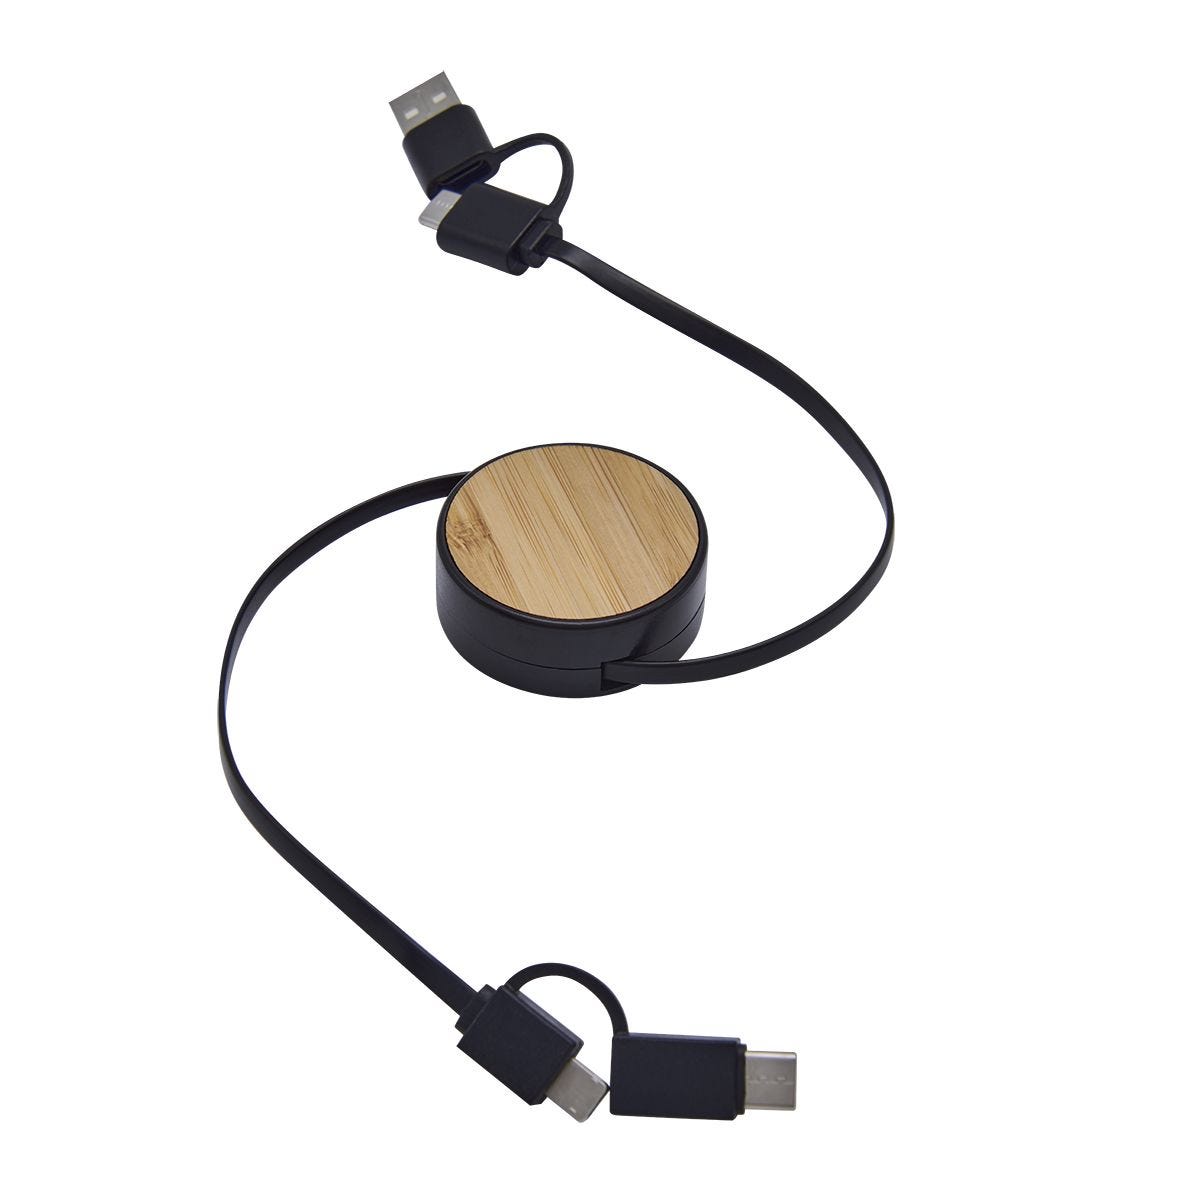 CEL058, CABLE BOLTA. Cable cargador 3 en 1. Incluye conector de entrada USB y tipo C, conector de salida 2 en 1 con micro USB y Lightning (8 pines) además de tipo C. Largo de cable 80 cm.